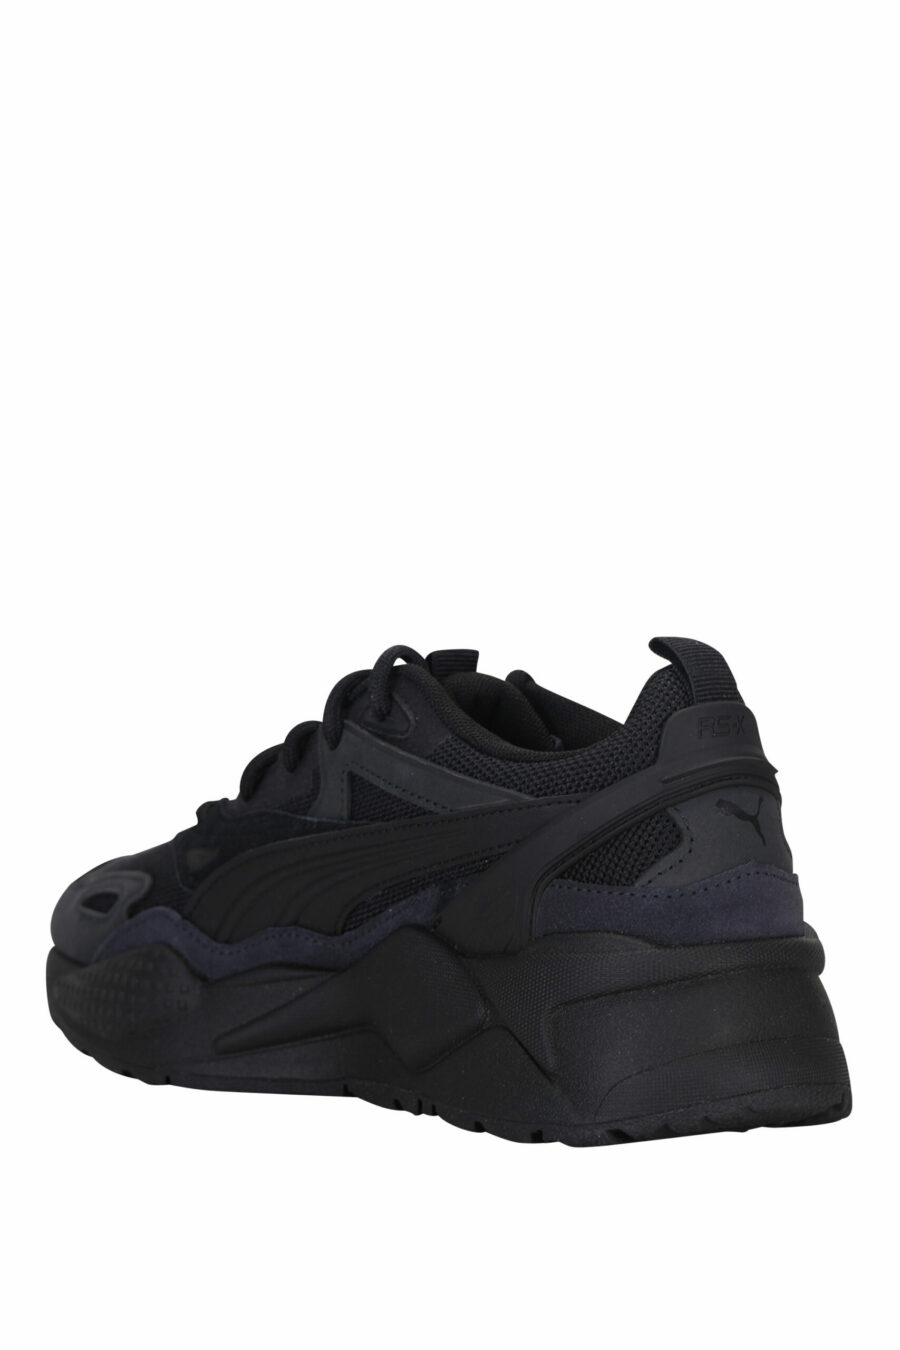 Gemischte schwarze Schuhe " RS-X " mit Mini-Logo - 4065452600723 3 skaliert